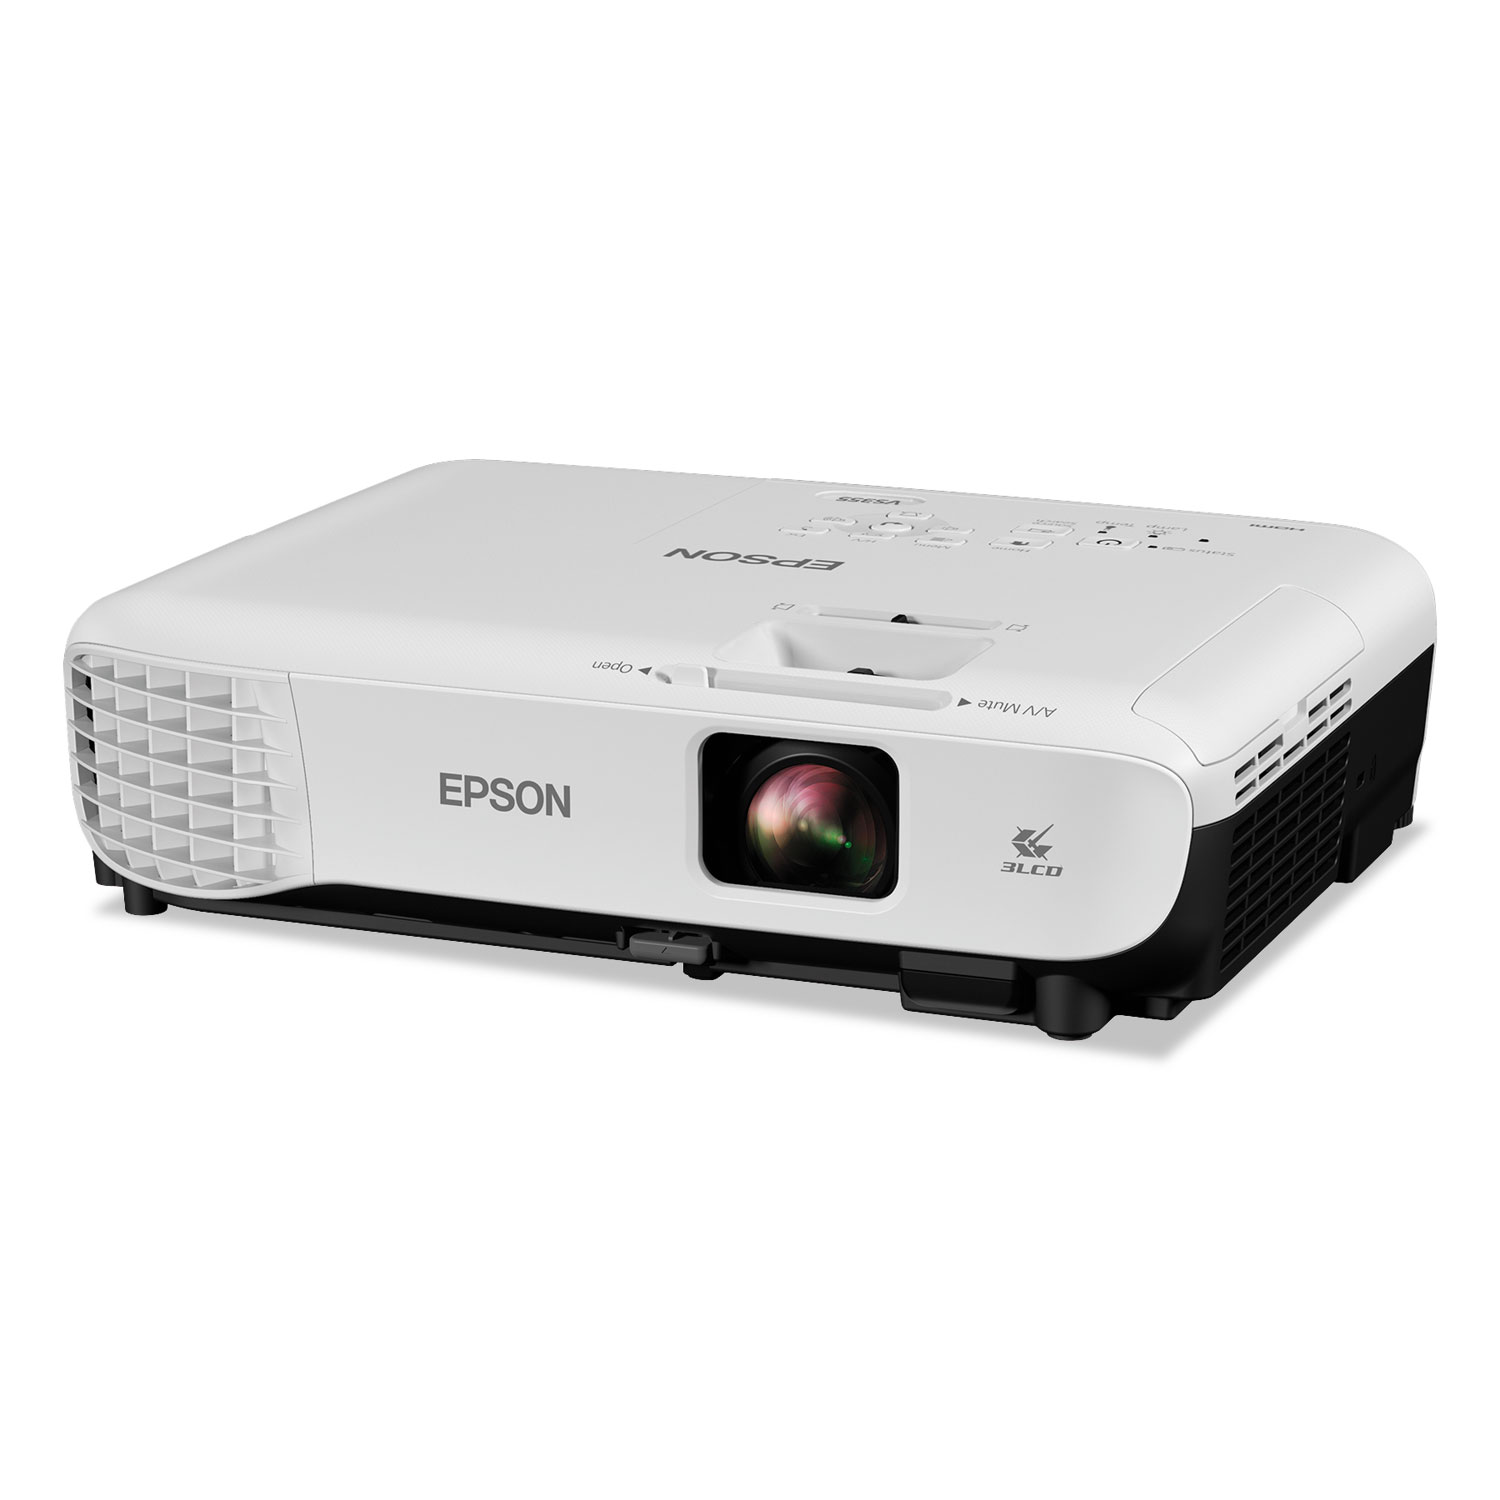 Vs355 Wxga 3lcd Projector 3 300 Lm 1280 X 800 Pixels 1 2x Zoom Supply Solutions